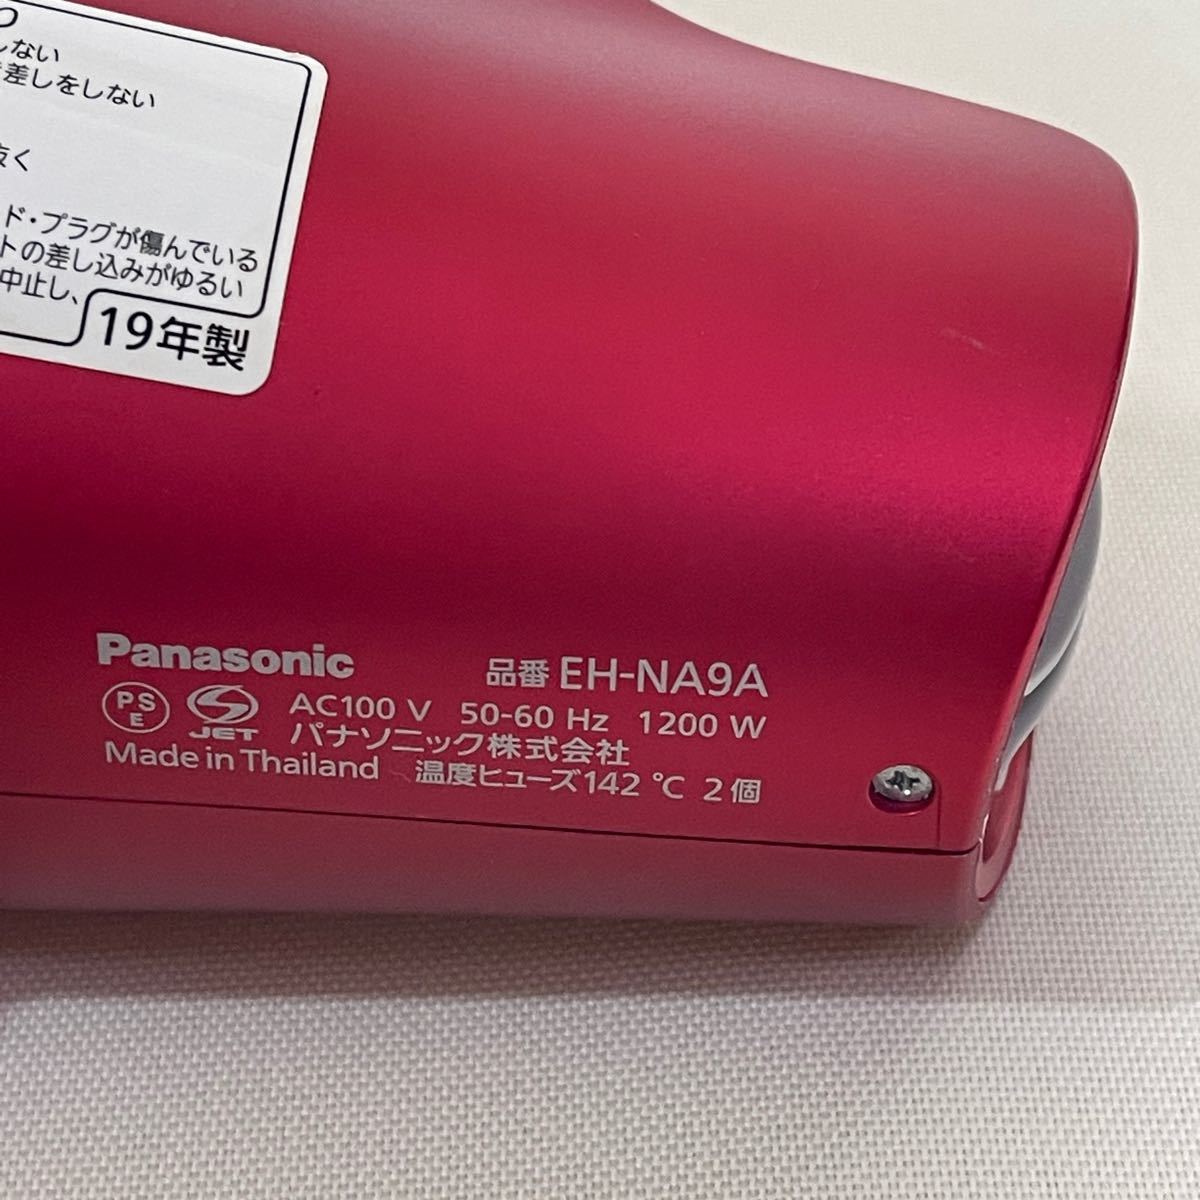 Panasonic EH-NA9A 2019年製 パナソニック ナノケア ドライヤー ルージュピンク